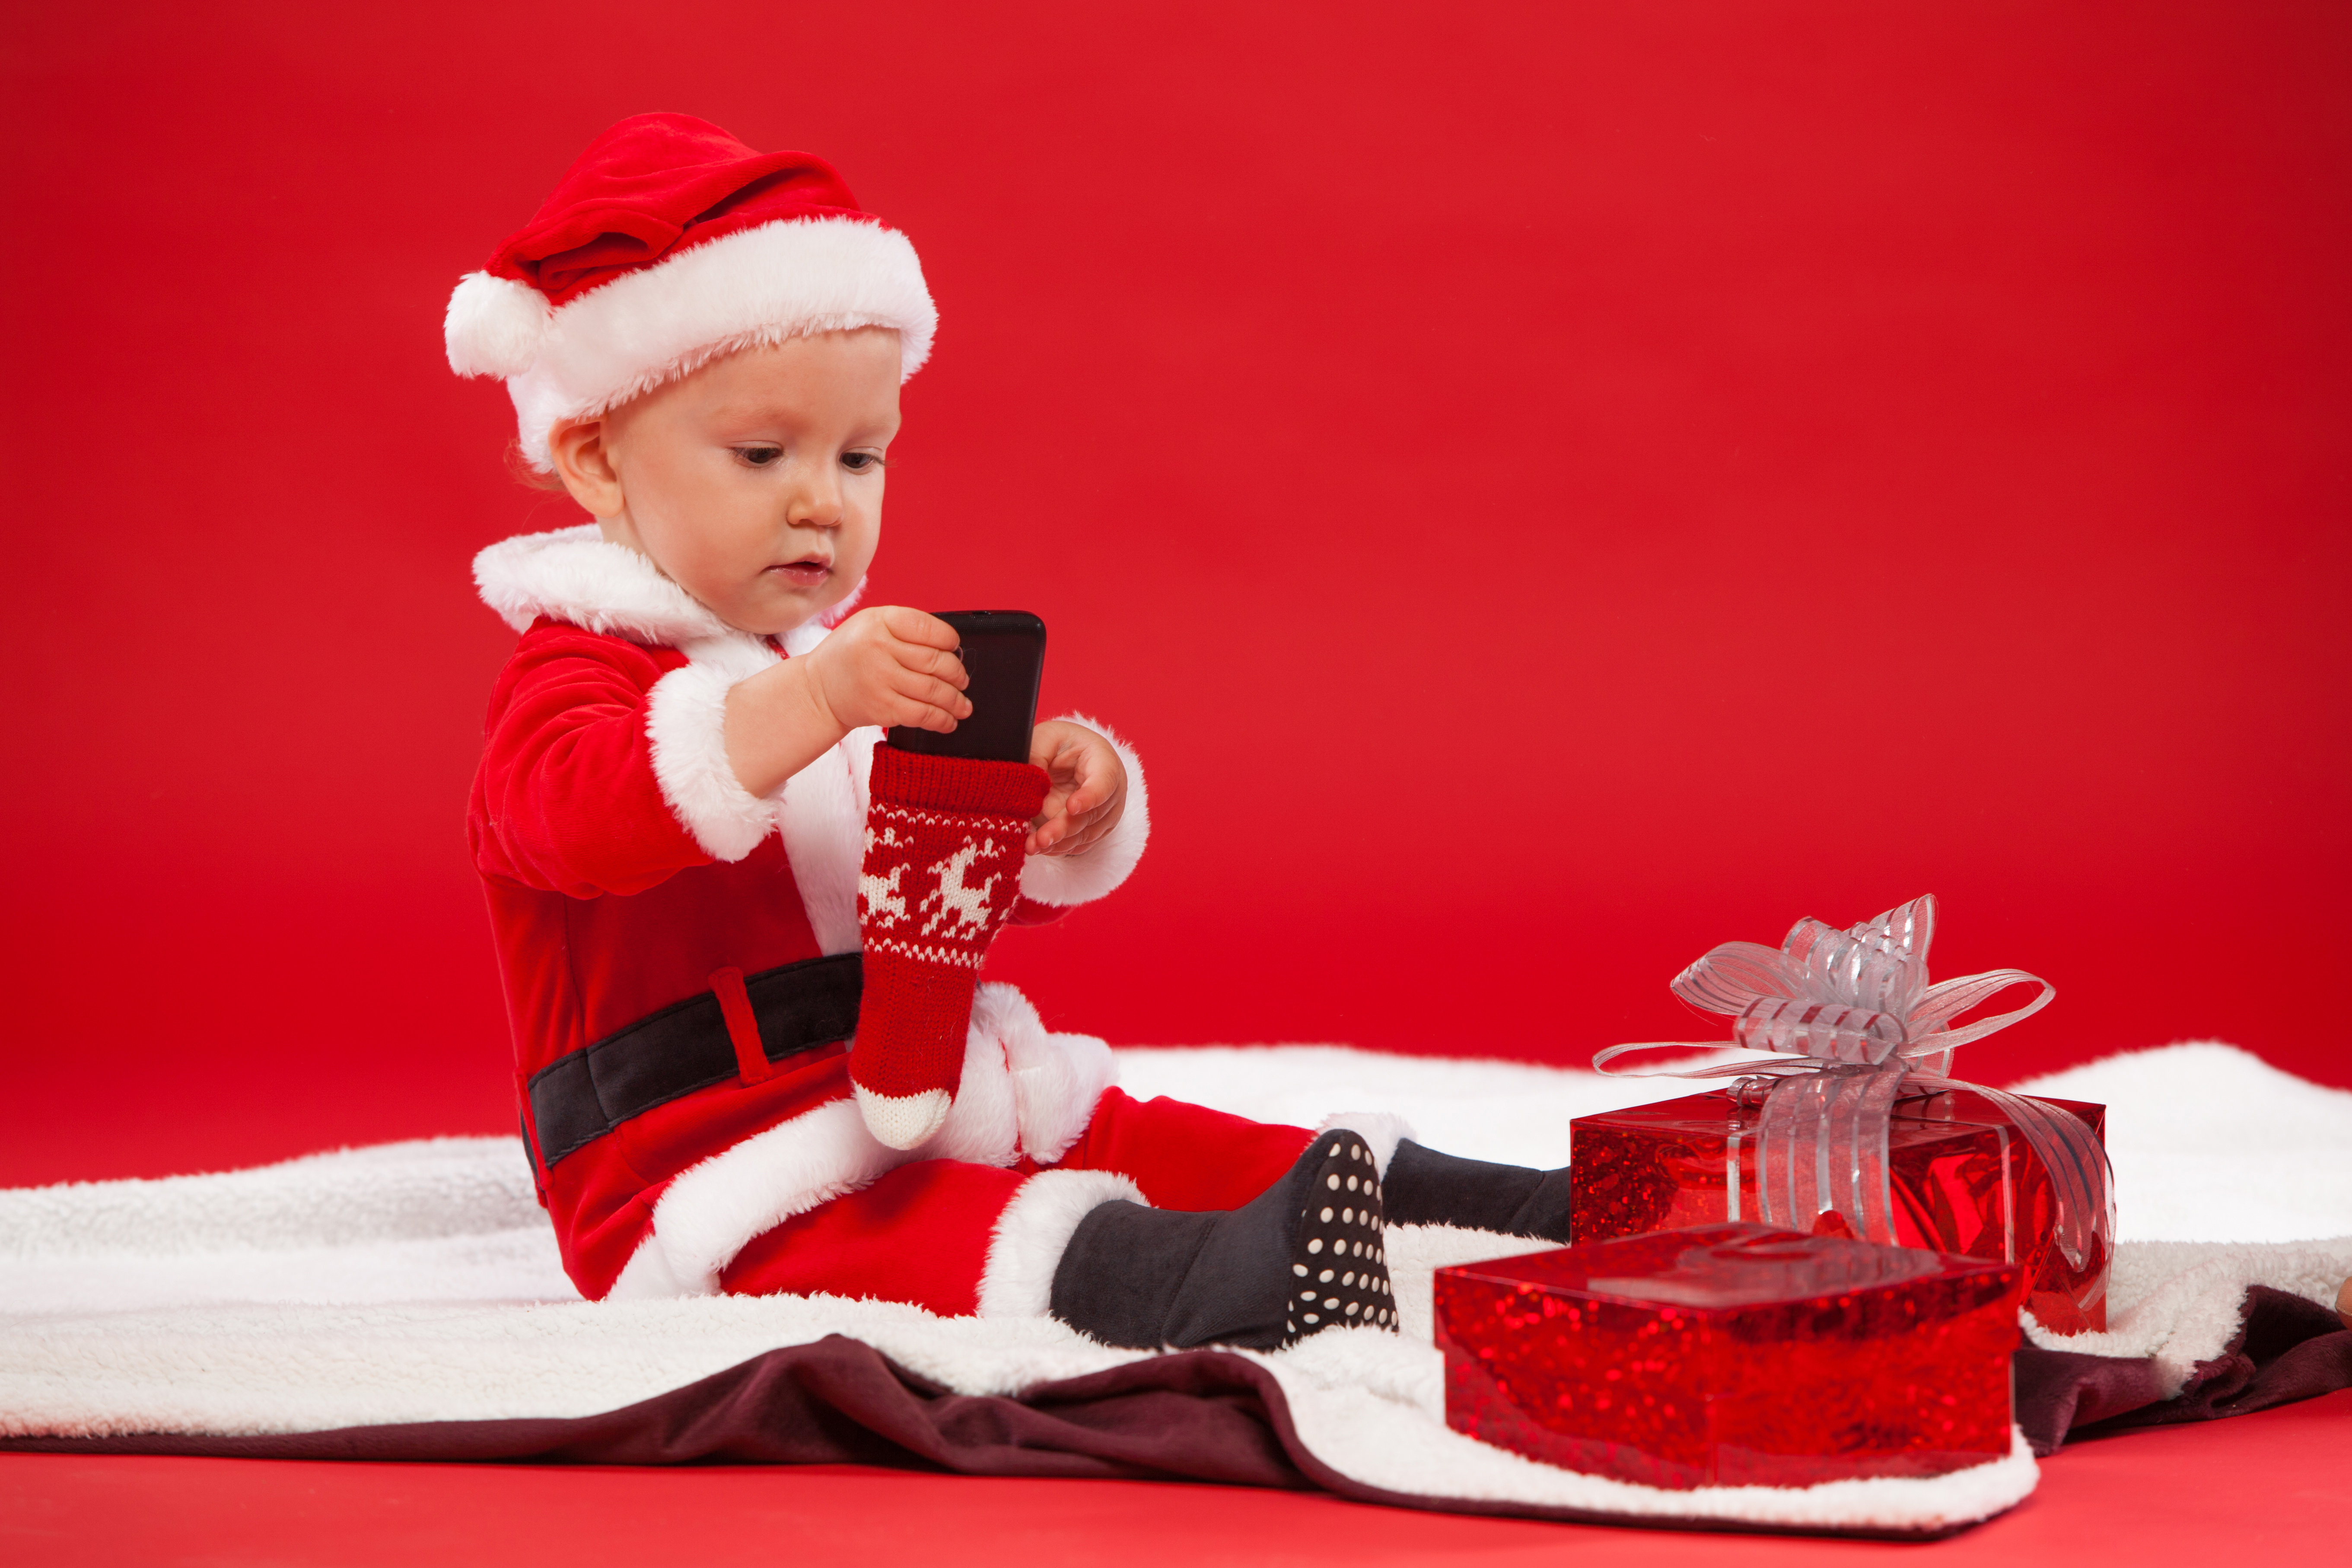 Скачать обои бесплатно Рождество, Малыш, Фотографии, Подарки, Шляпа Санты картинка на рабочий стол ПК